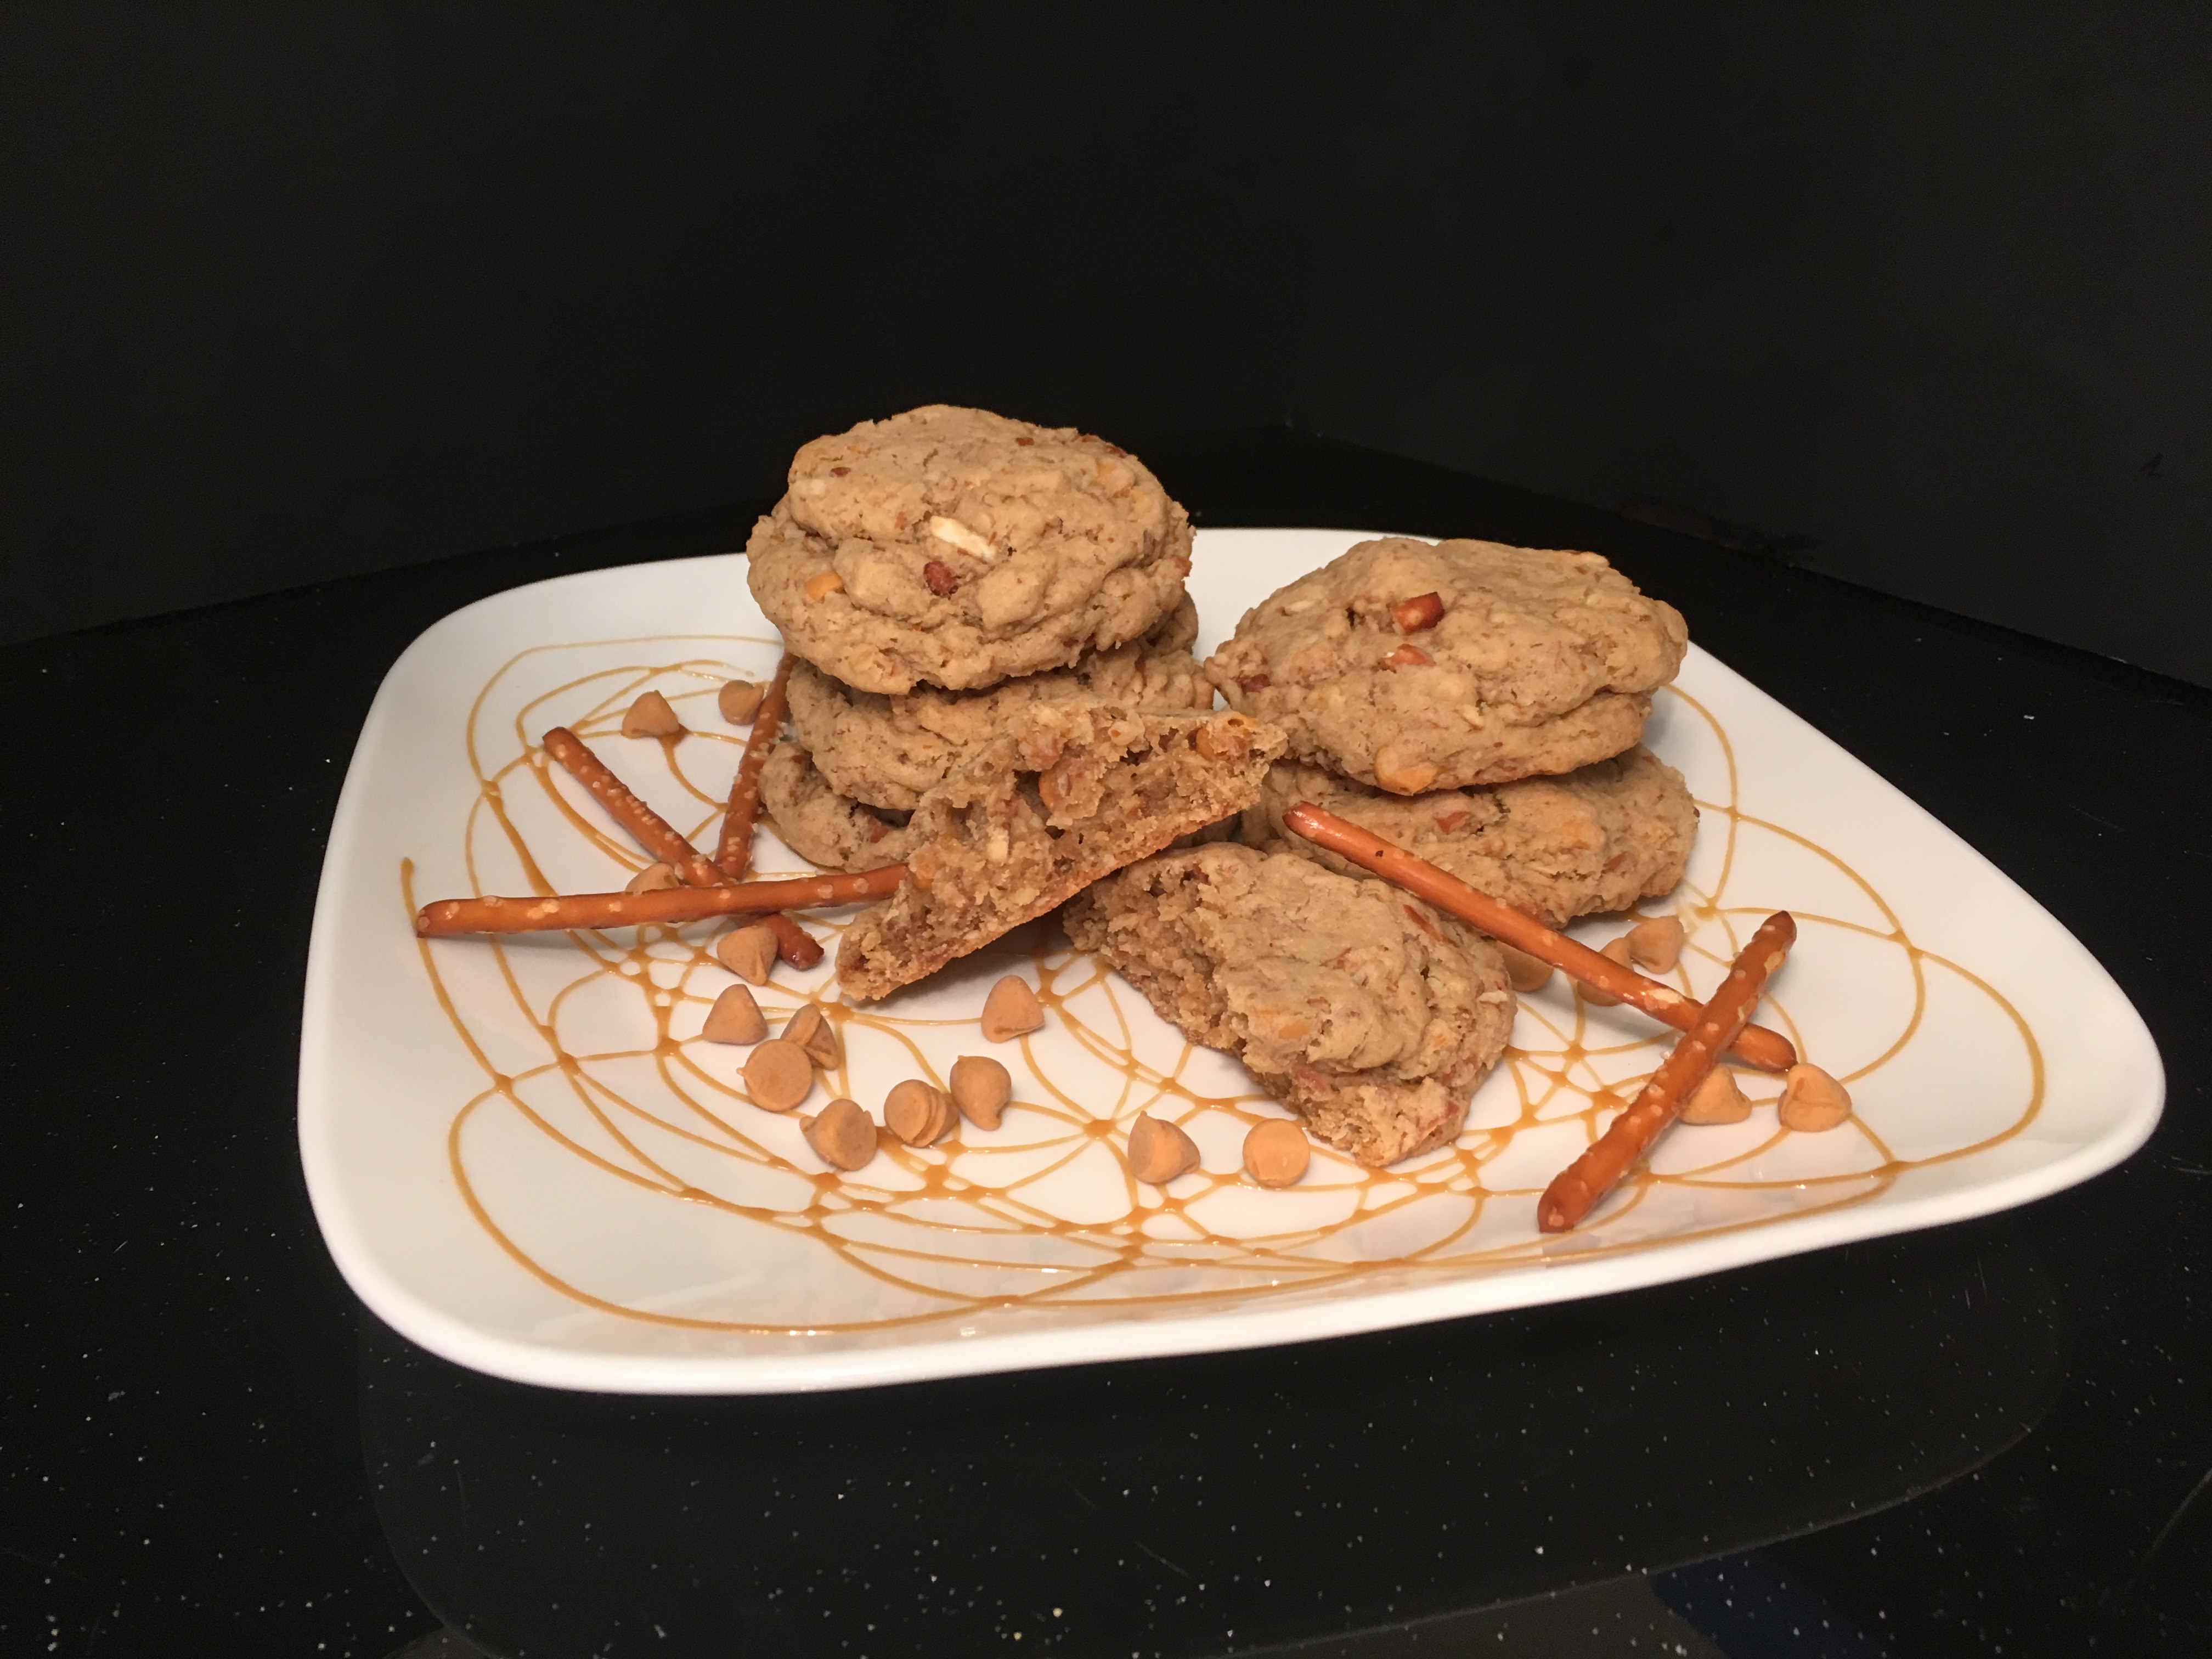 Snugglecubs Cookies